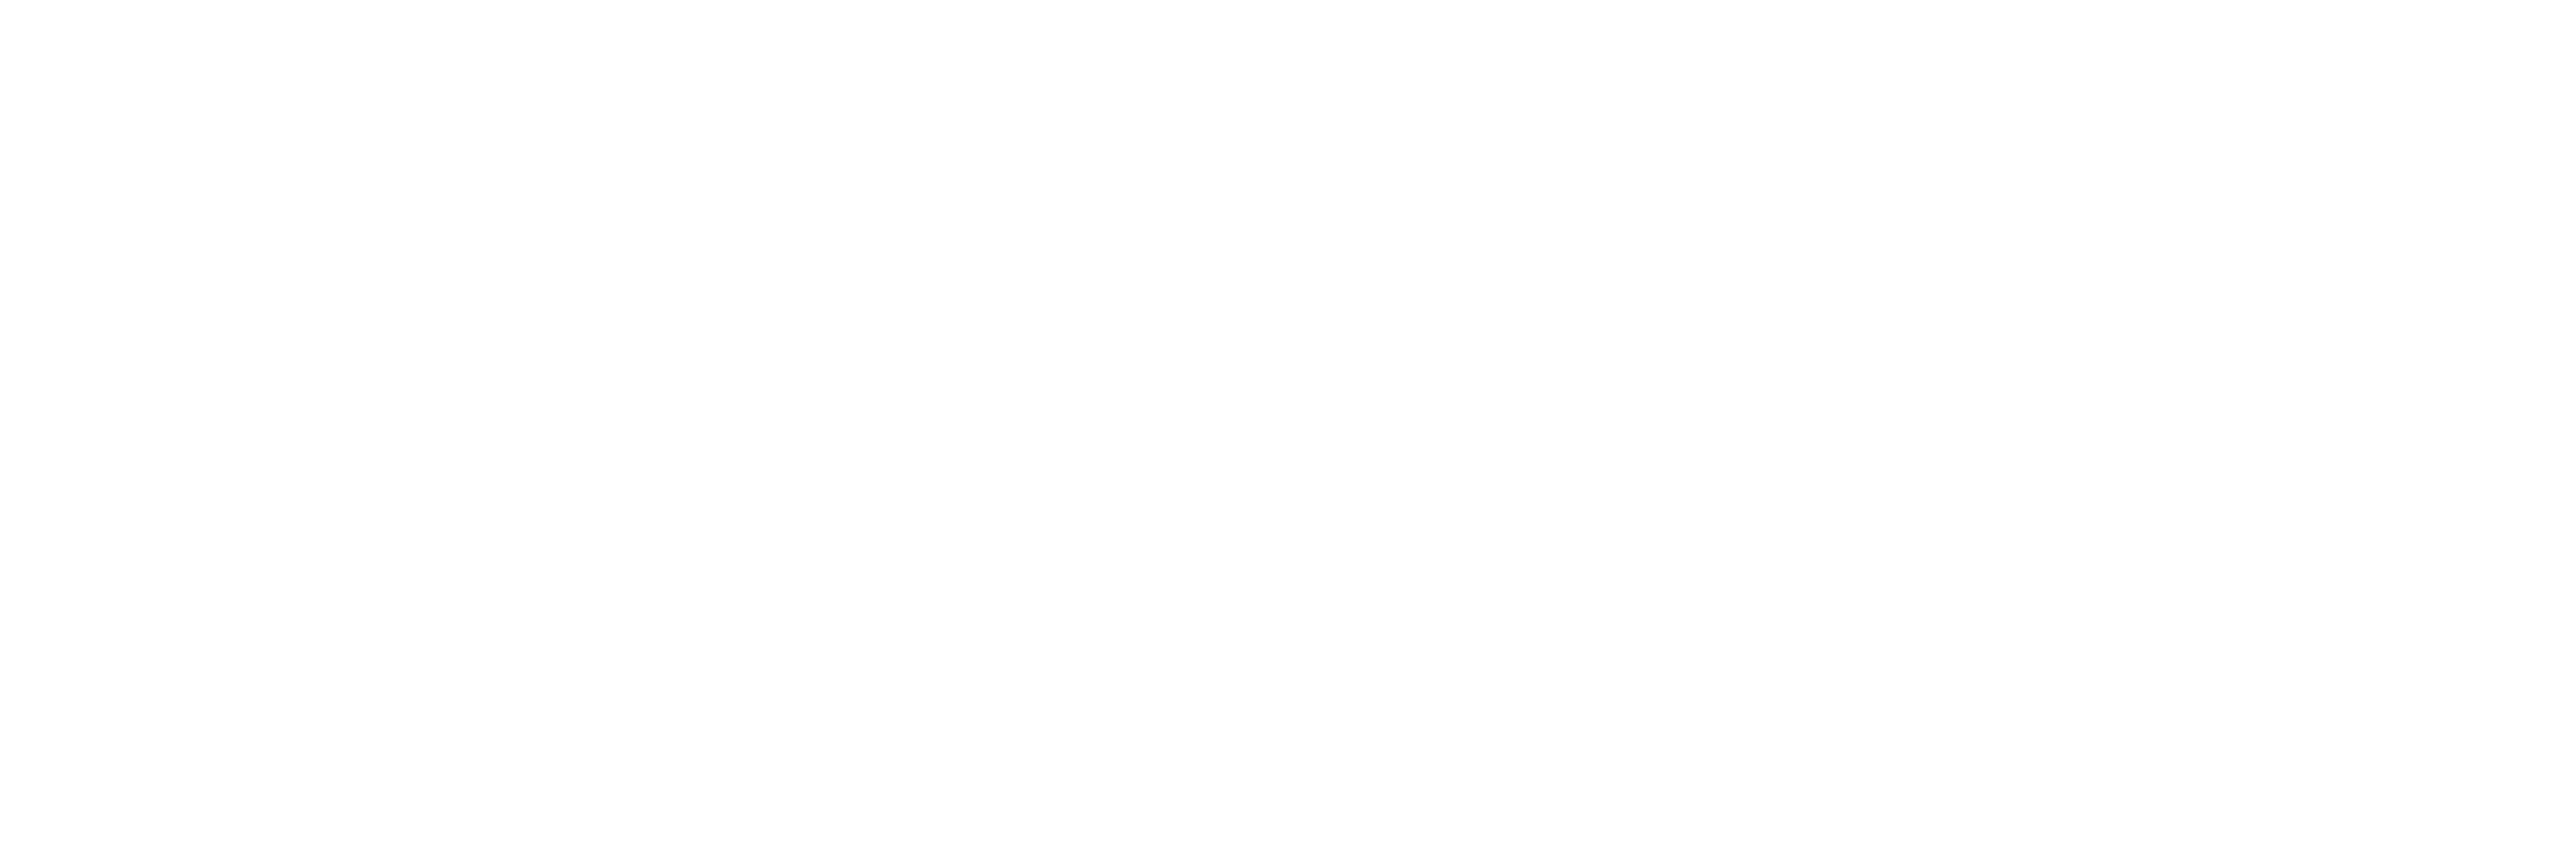 Leo Potter Tattoo